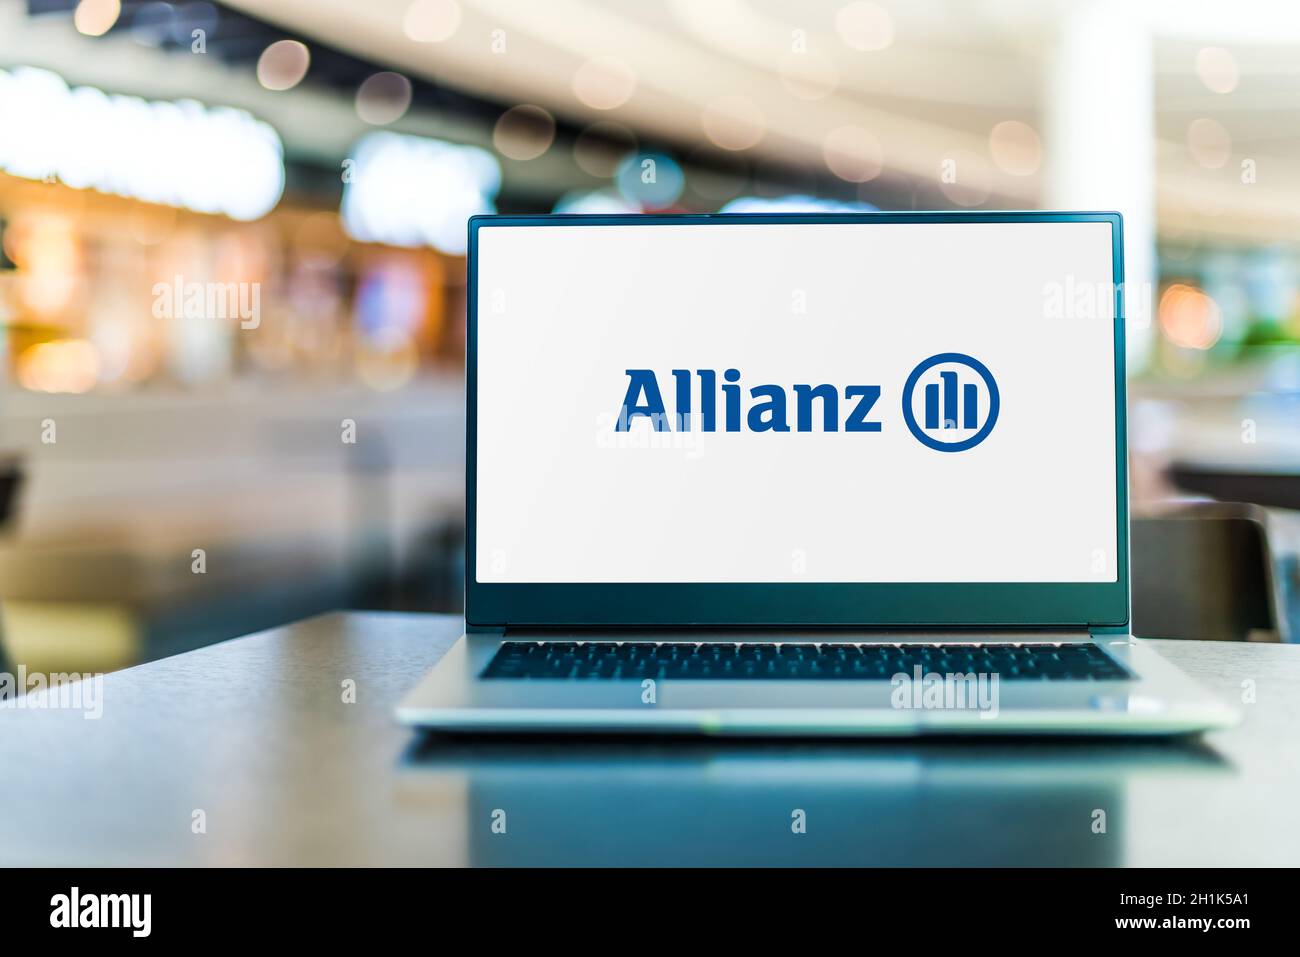 POZNAN, POL - SEP 23, 2020 : ordinateur portable affichant le logo d'Allianz se, société multinationale de services financiers dont le siège social est situé à Munich, en Allemagne Banque D'Images